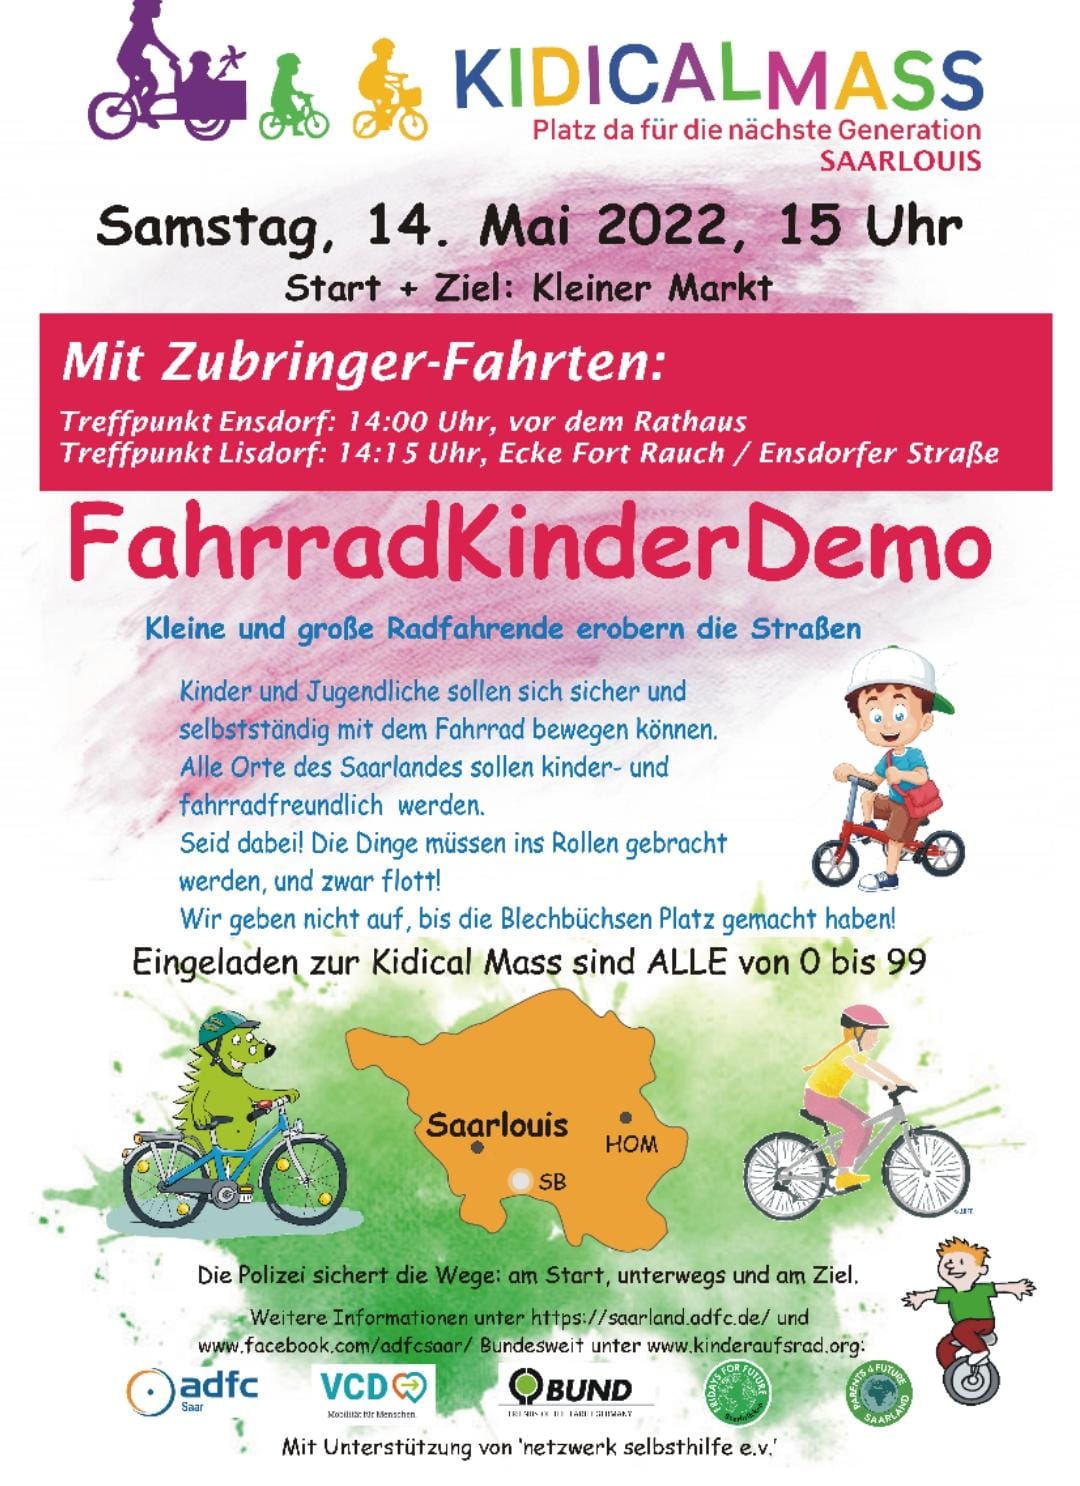 Fahrrad-Kinder-Demo "Kidical Mass" am 14.05.2022